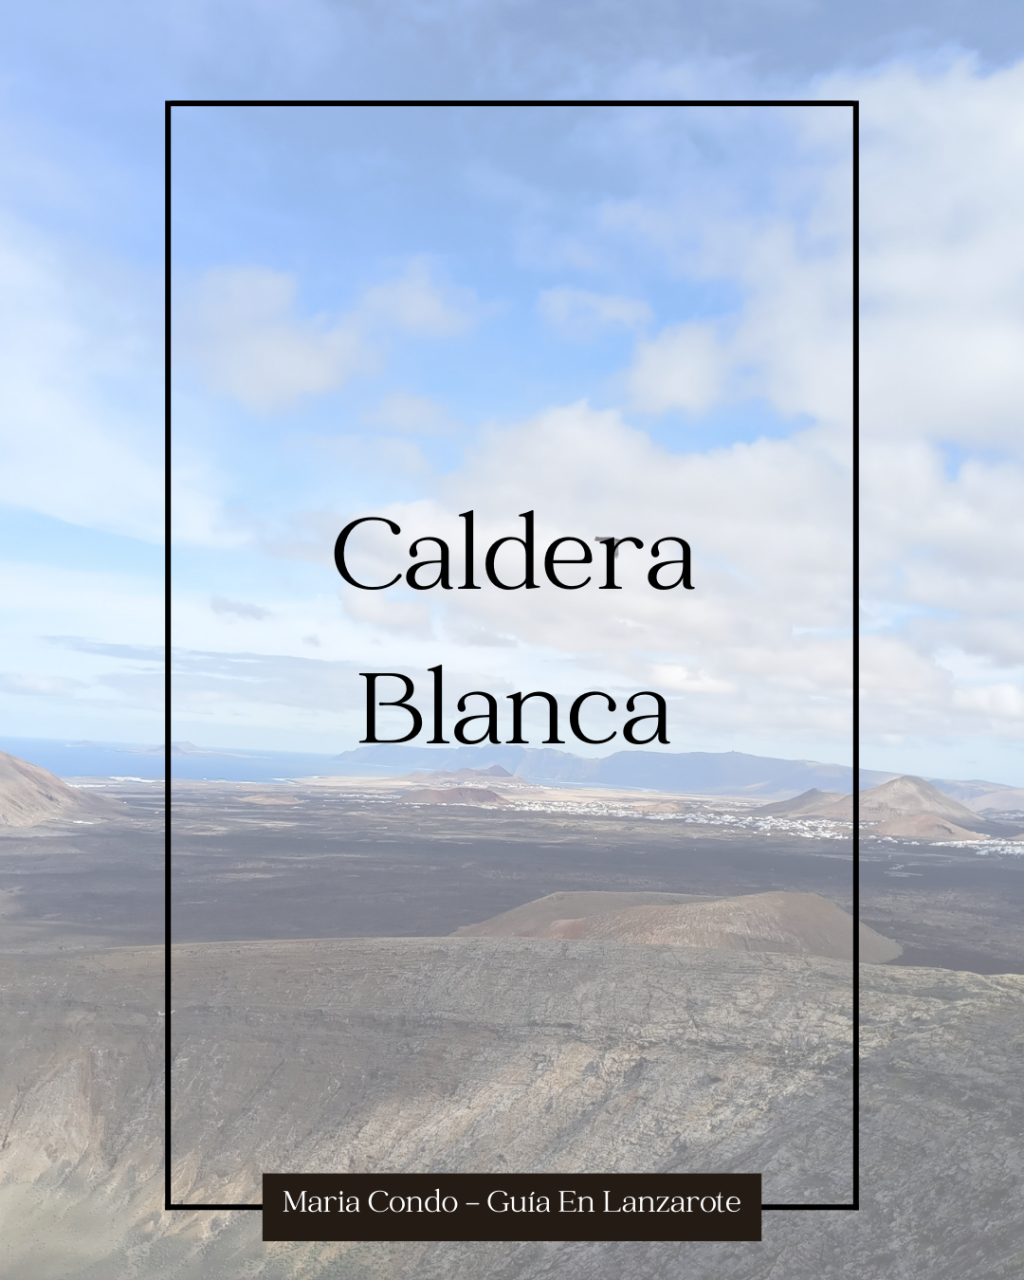 Ruta por Caldera Blanca, senderismo en Lanzarote